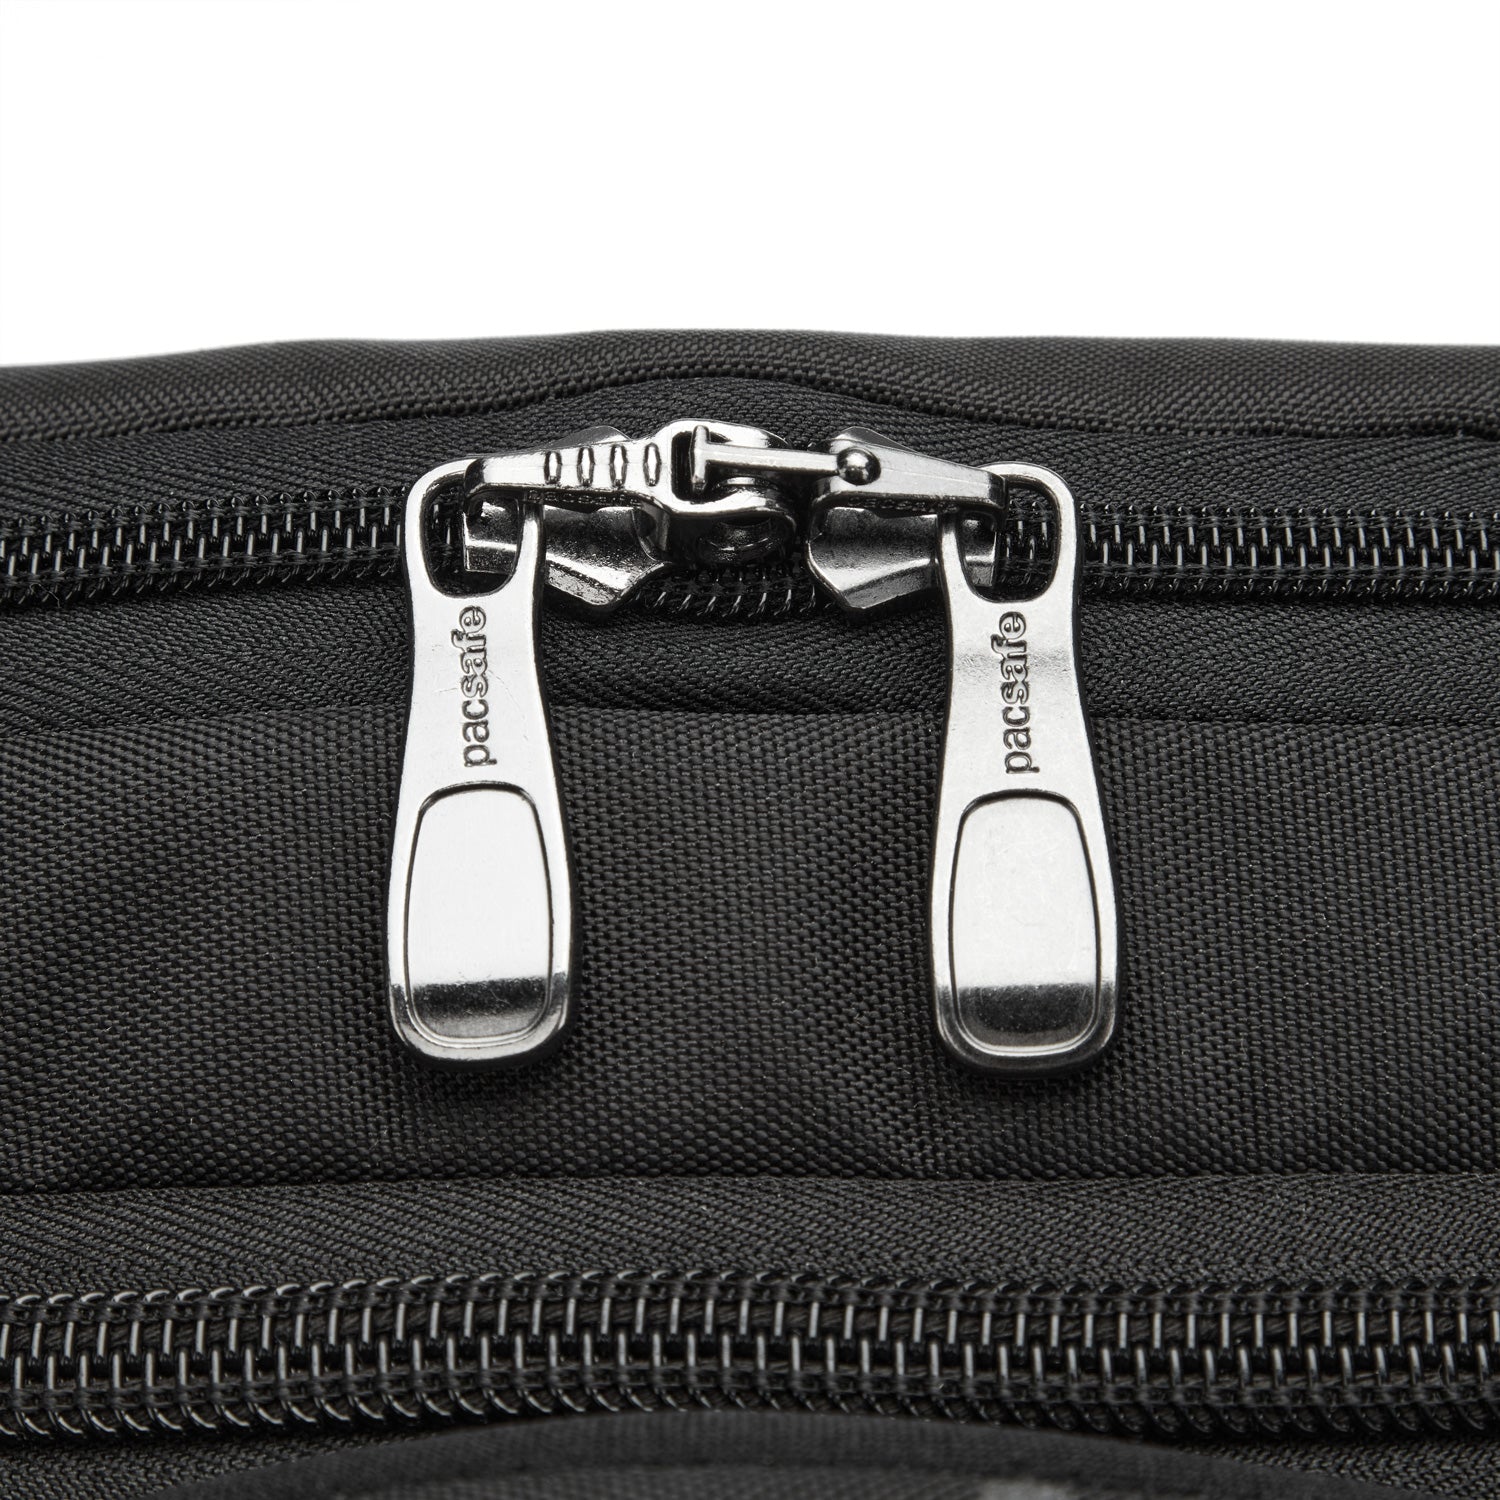 Zipper Security Clip – Sturdi Products